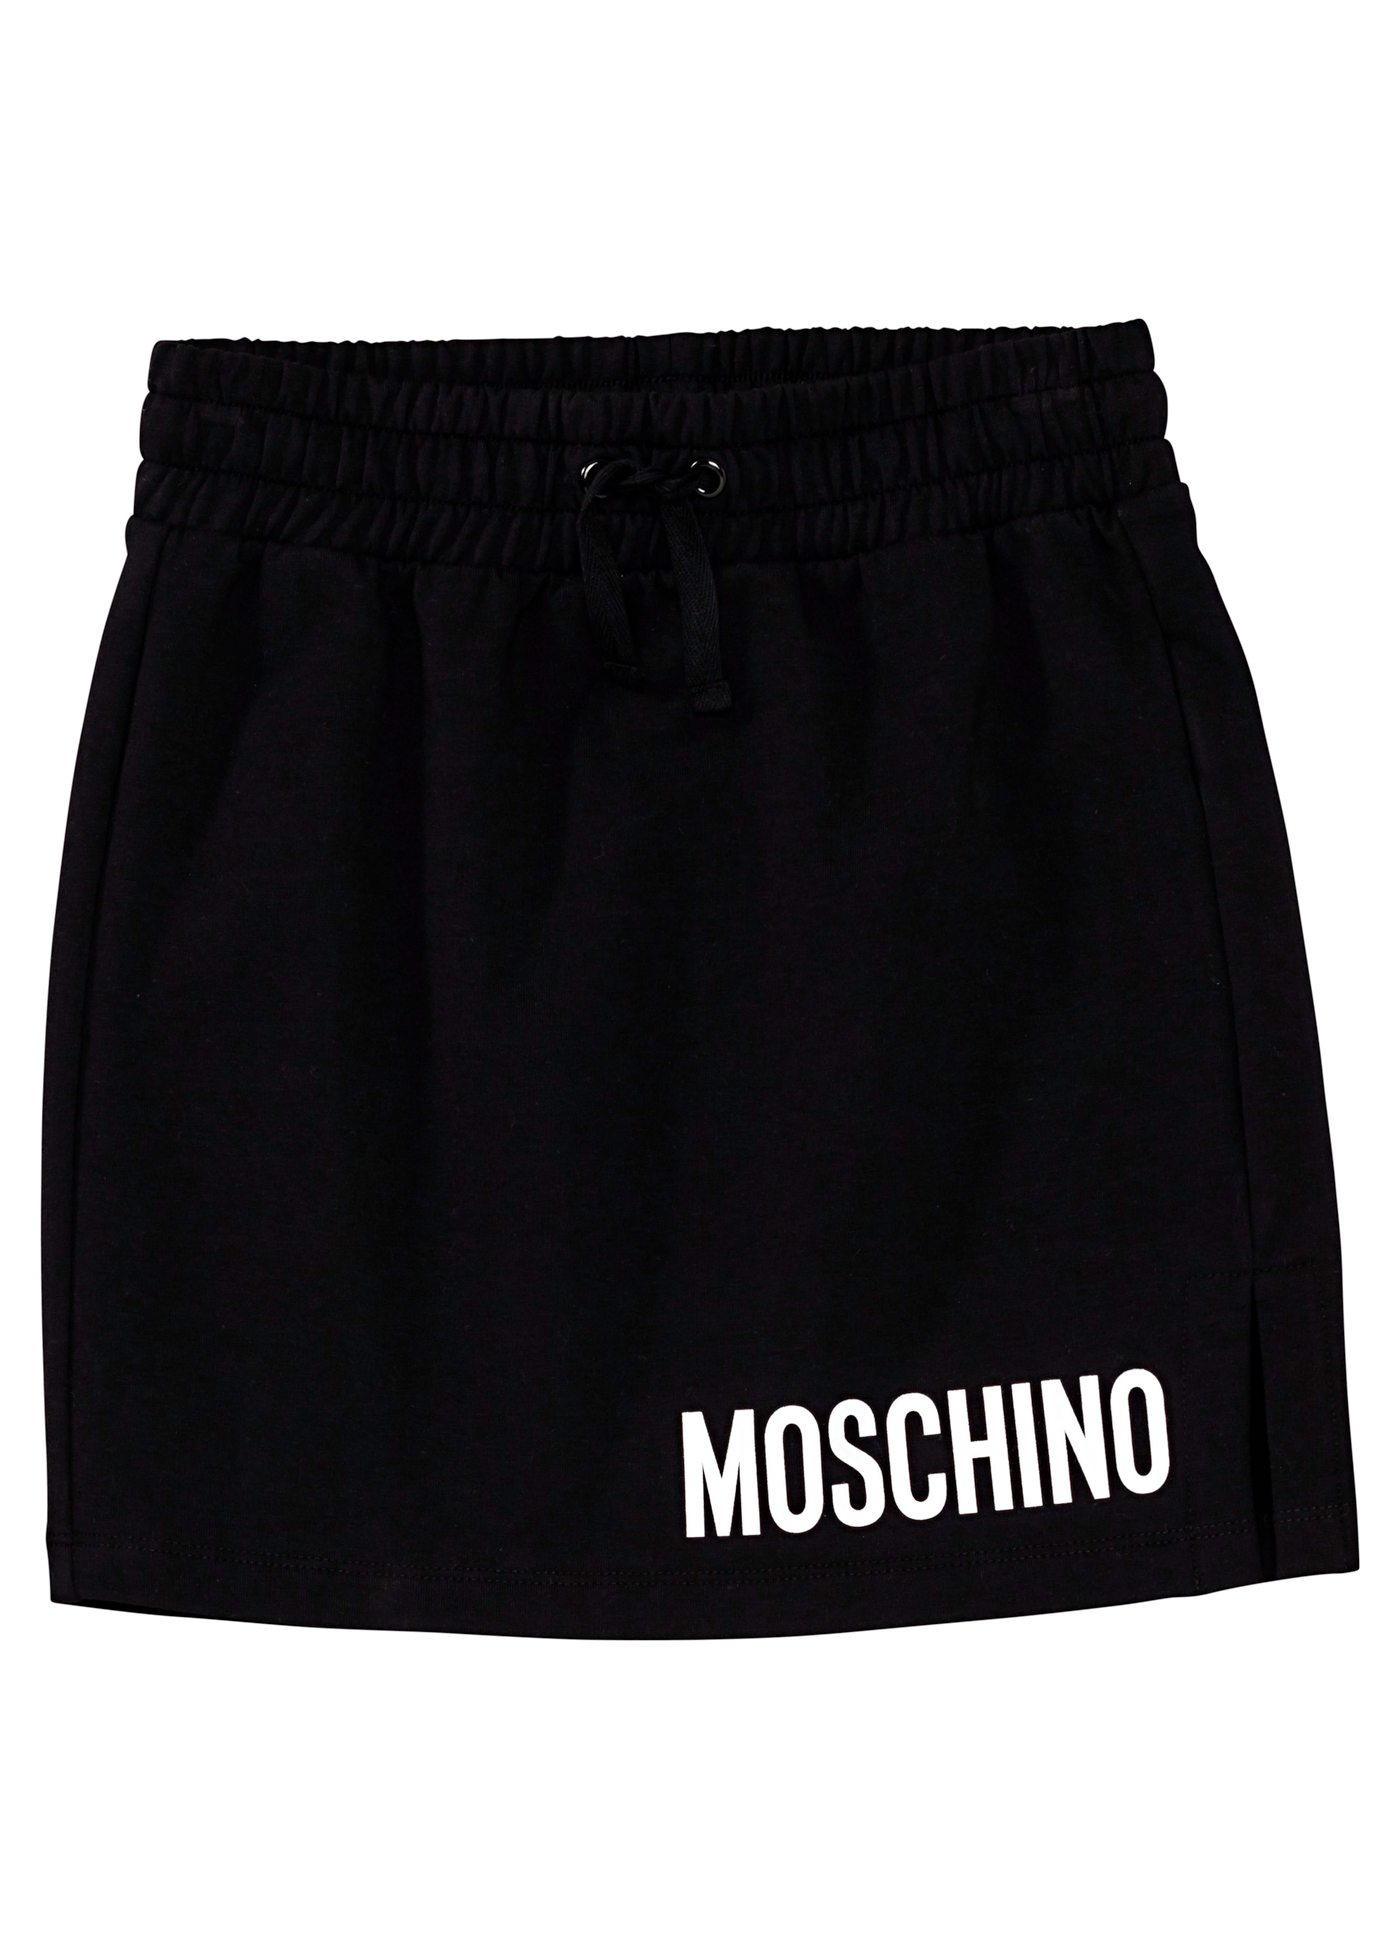 Moschino Short Skirt image number 0